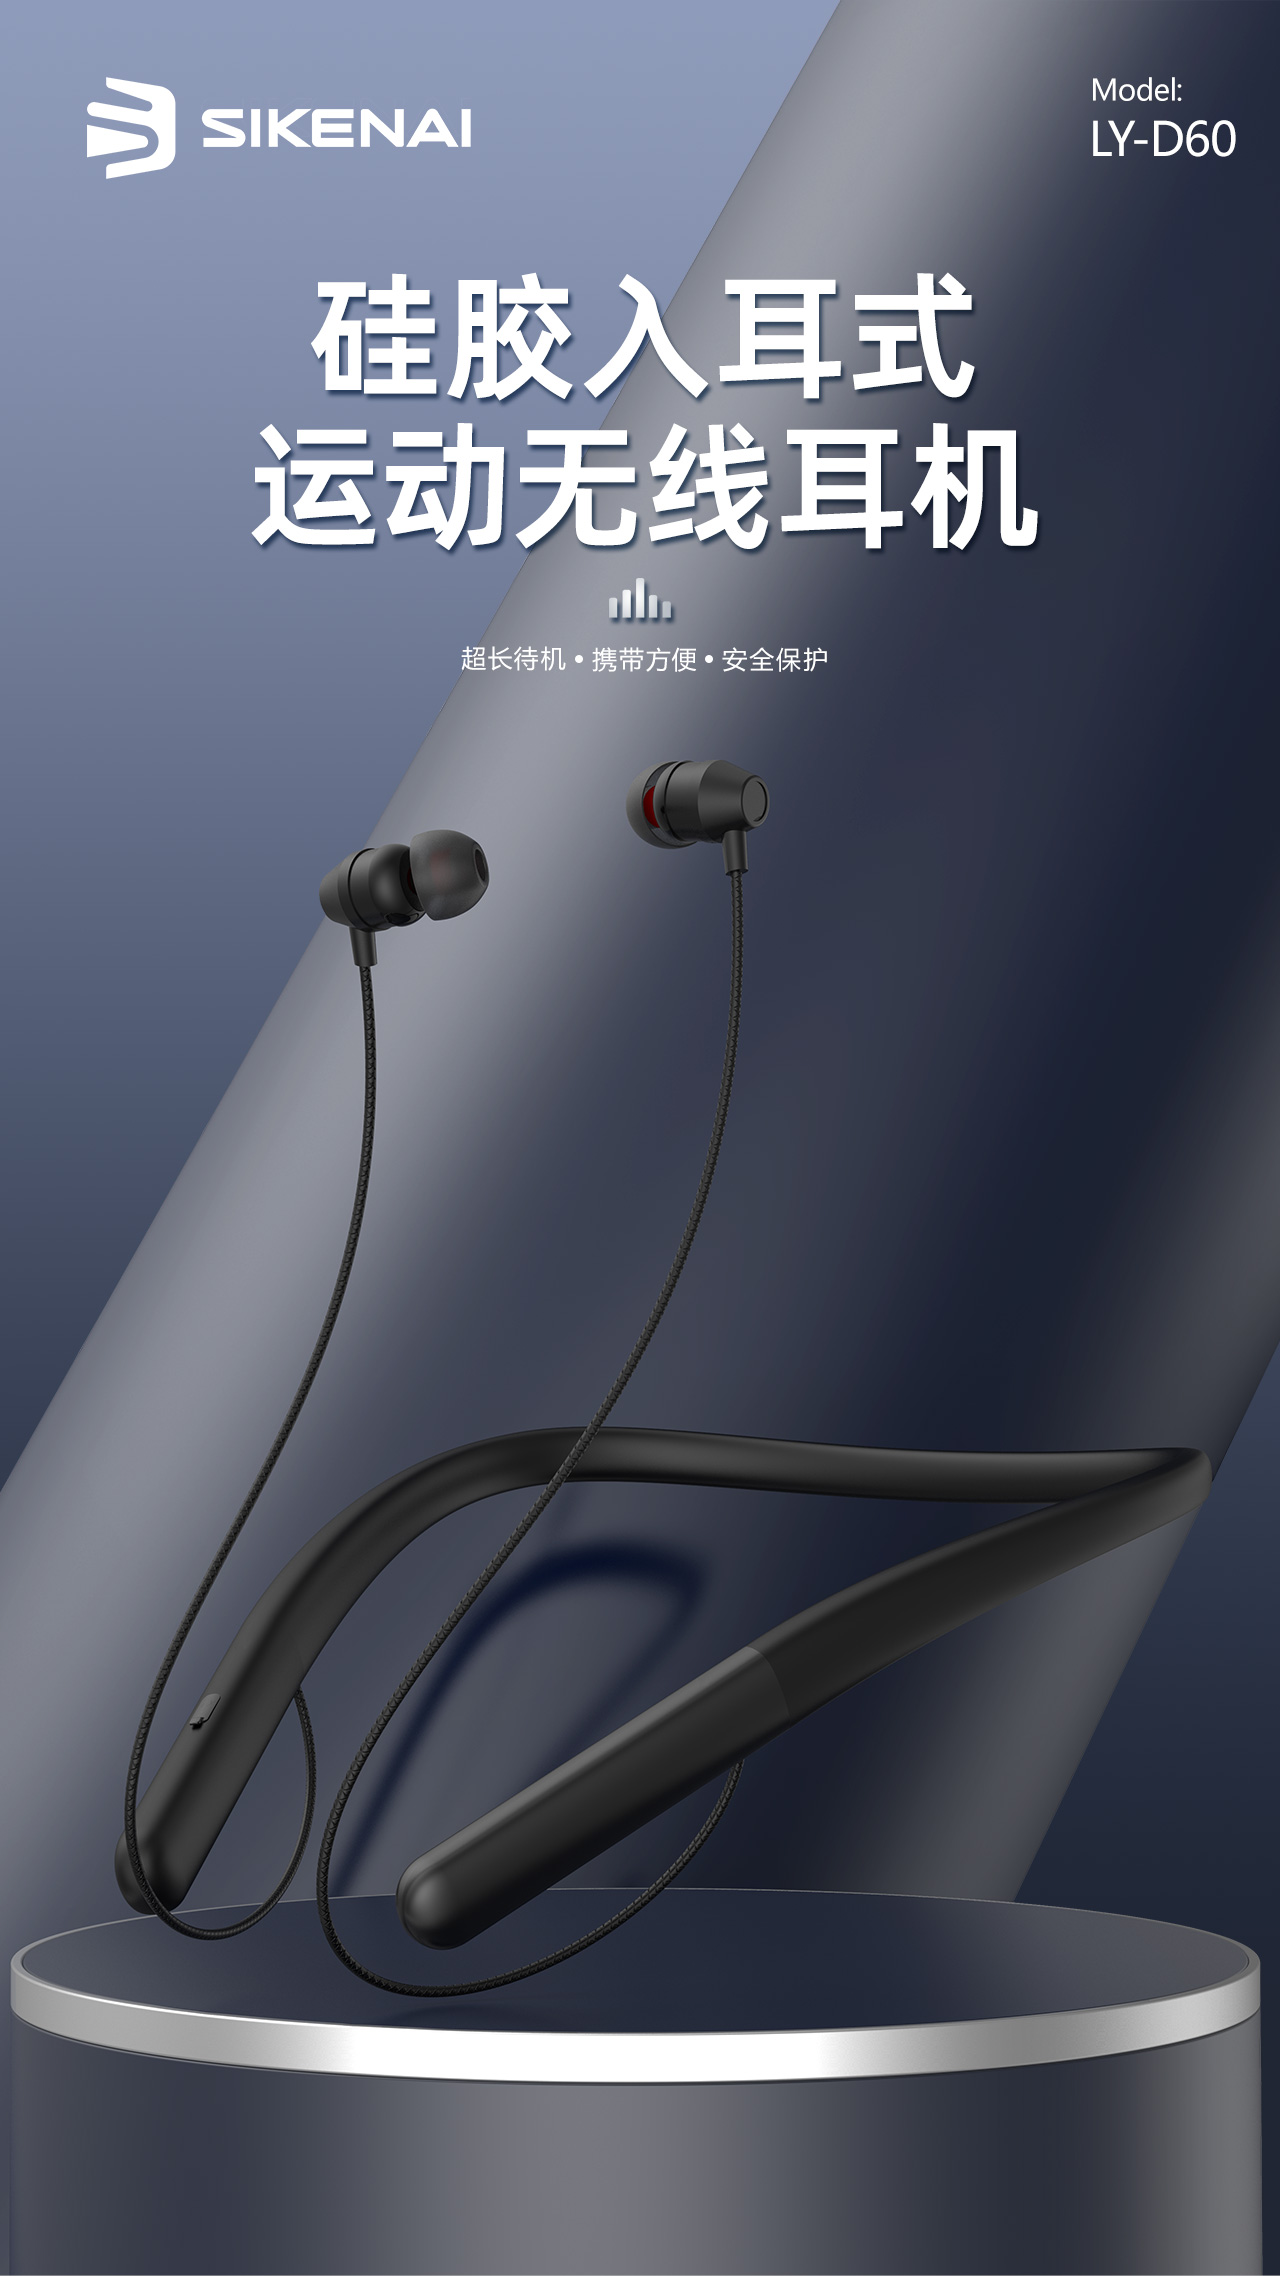 230612-LY-D60-运动蓝牙耳机详情页中文版_1.jpg